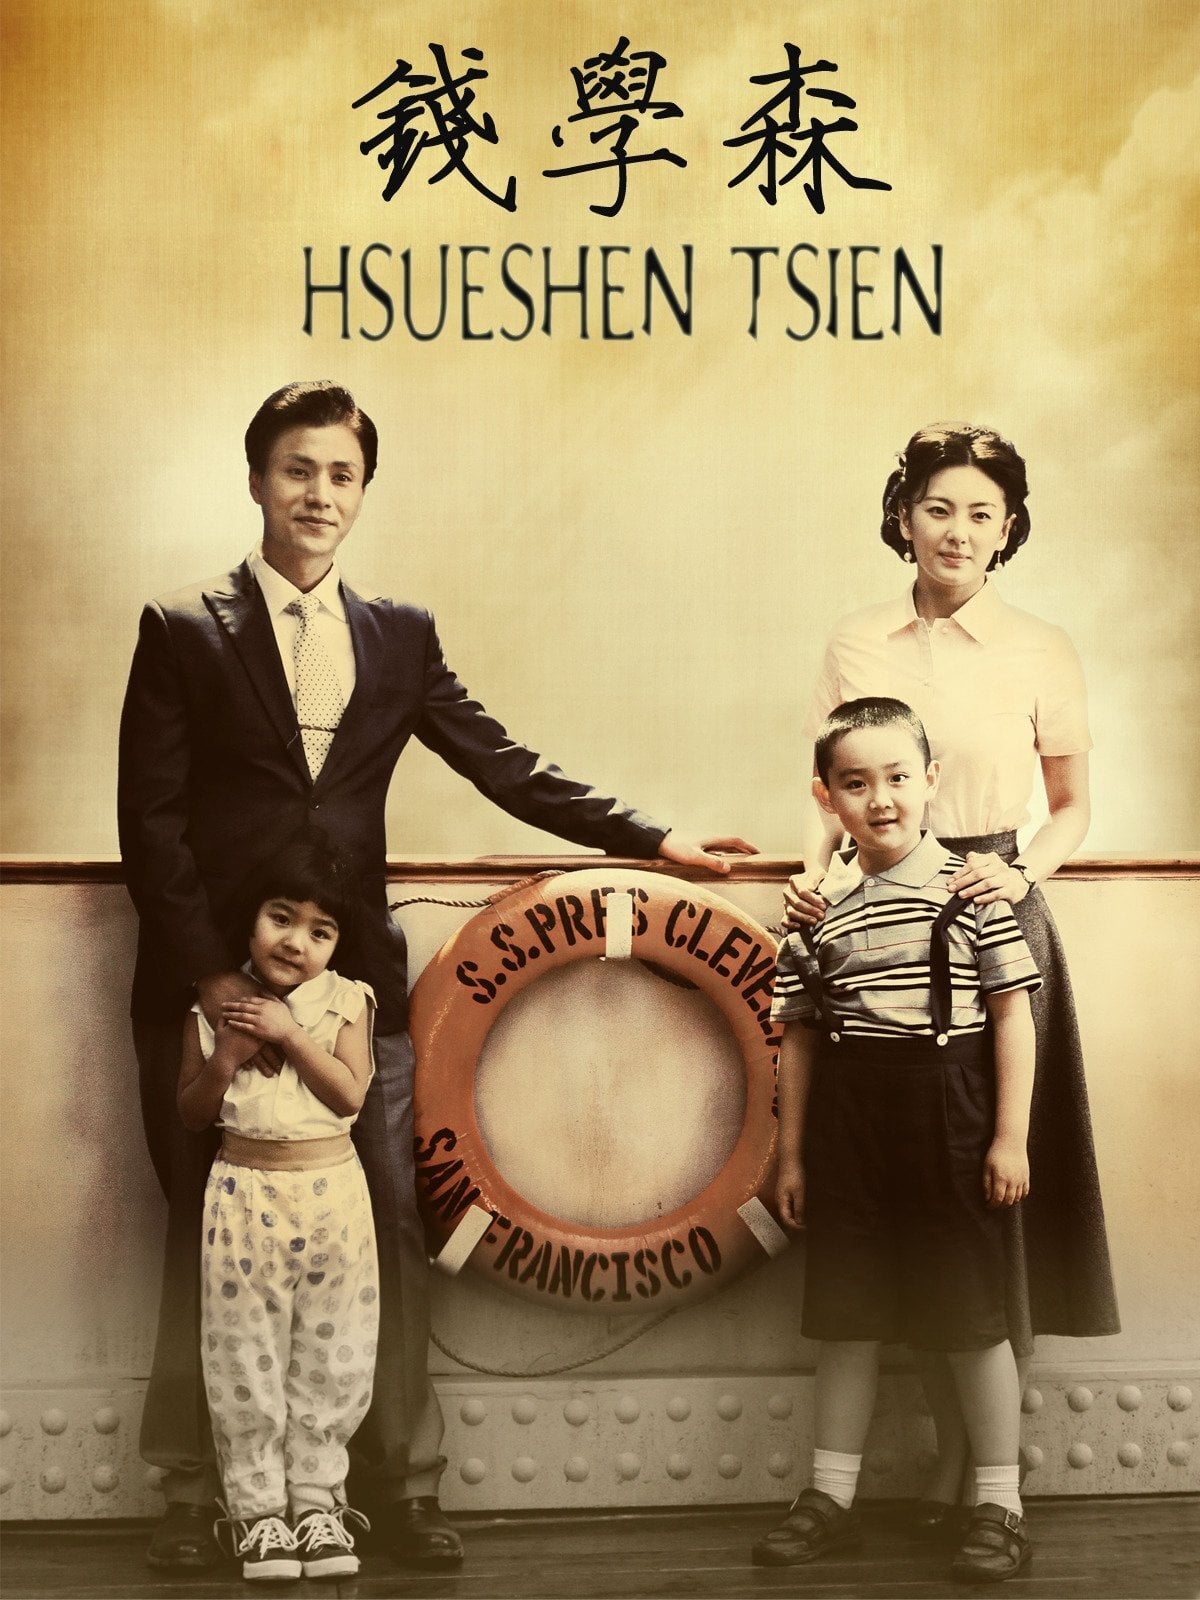 Hsue-shen Tsien (2012)